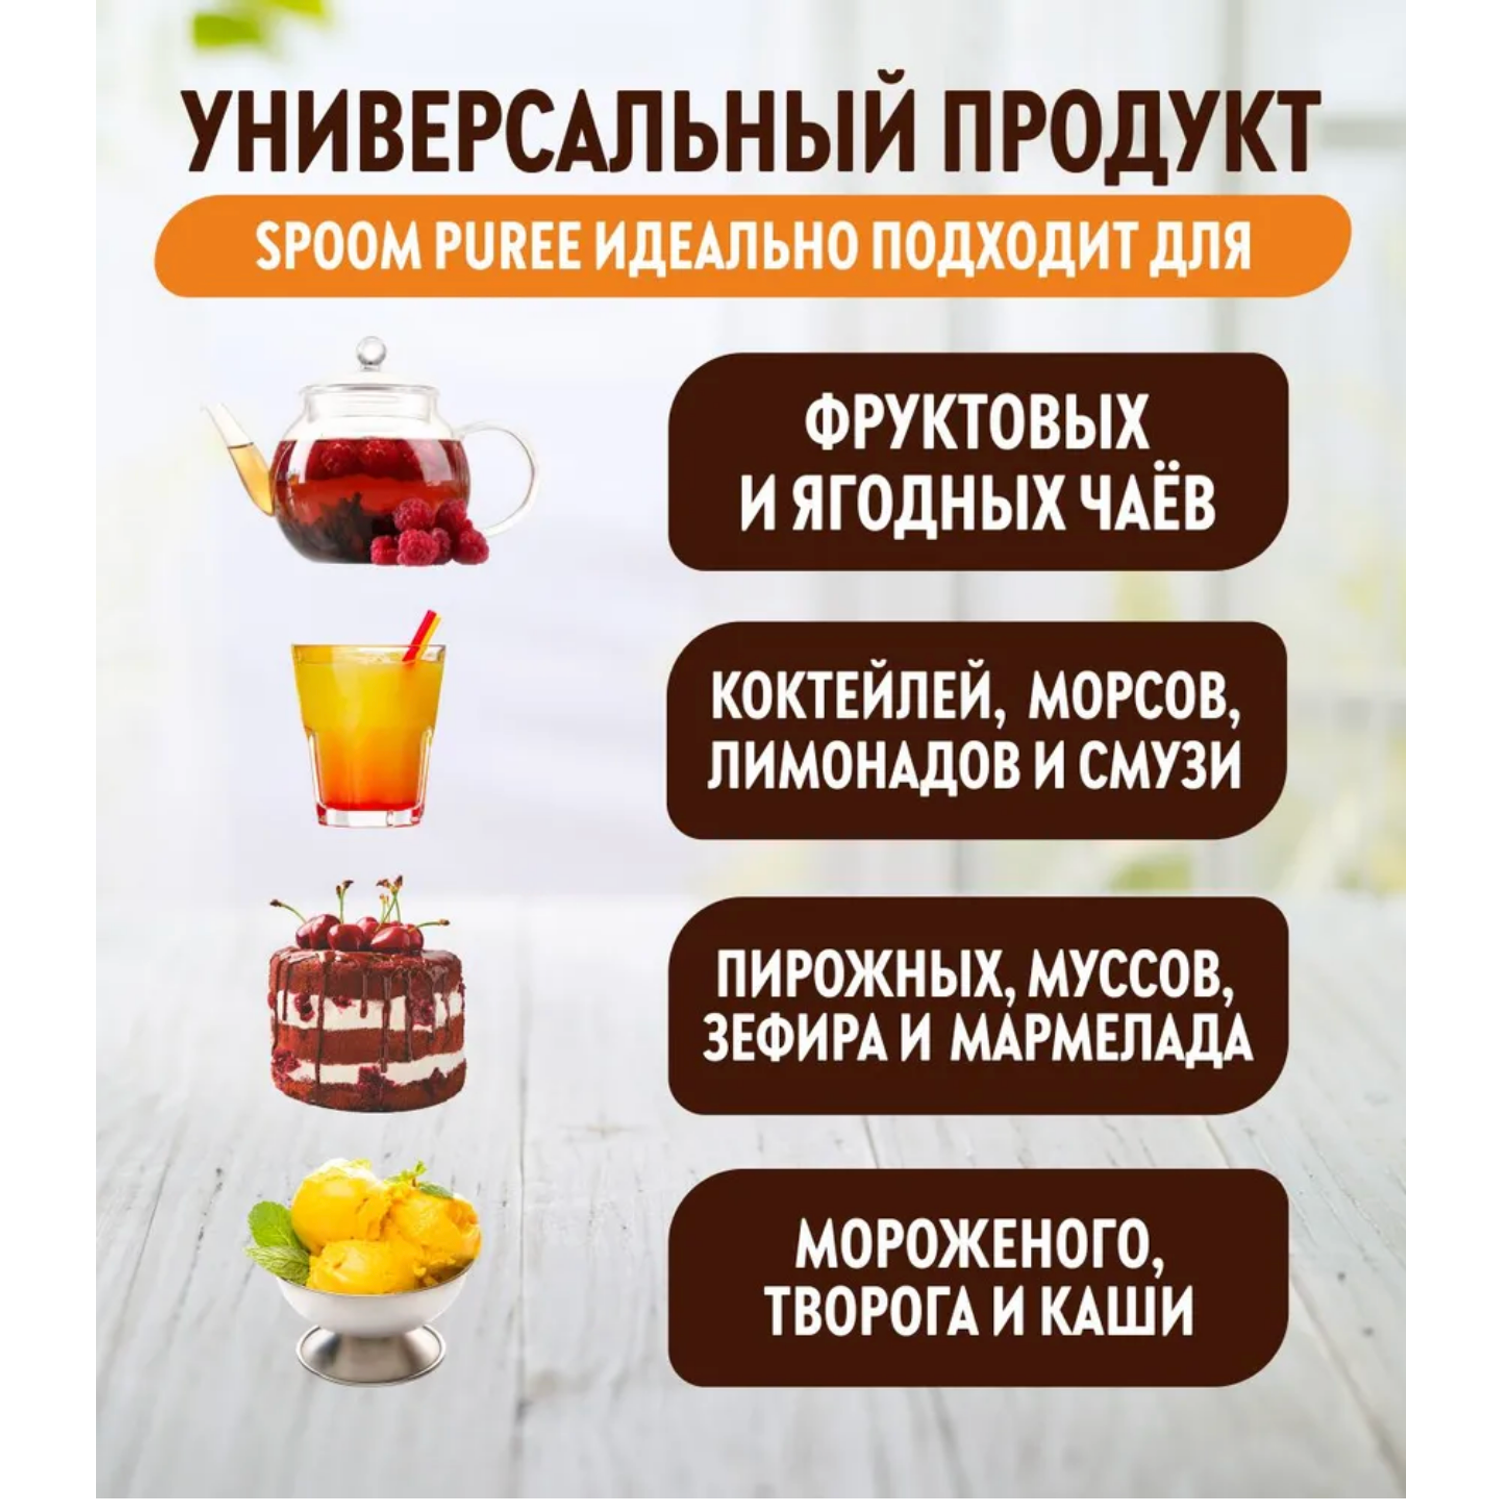 Натуральный концентрат SPOOM PUREE Мандарин 1кг основа для приготовления напитков и десертов - фото 2